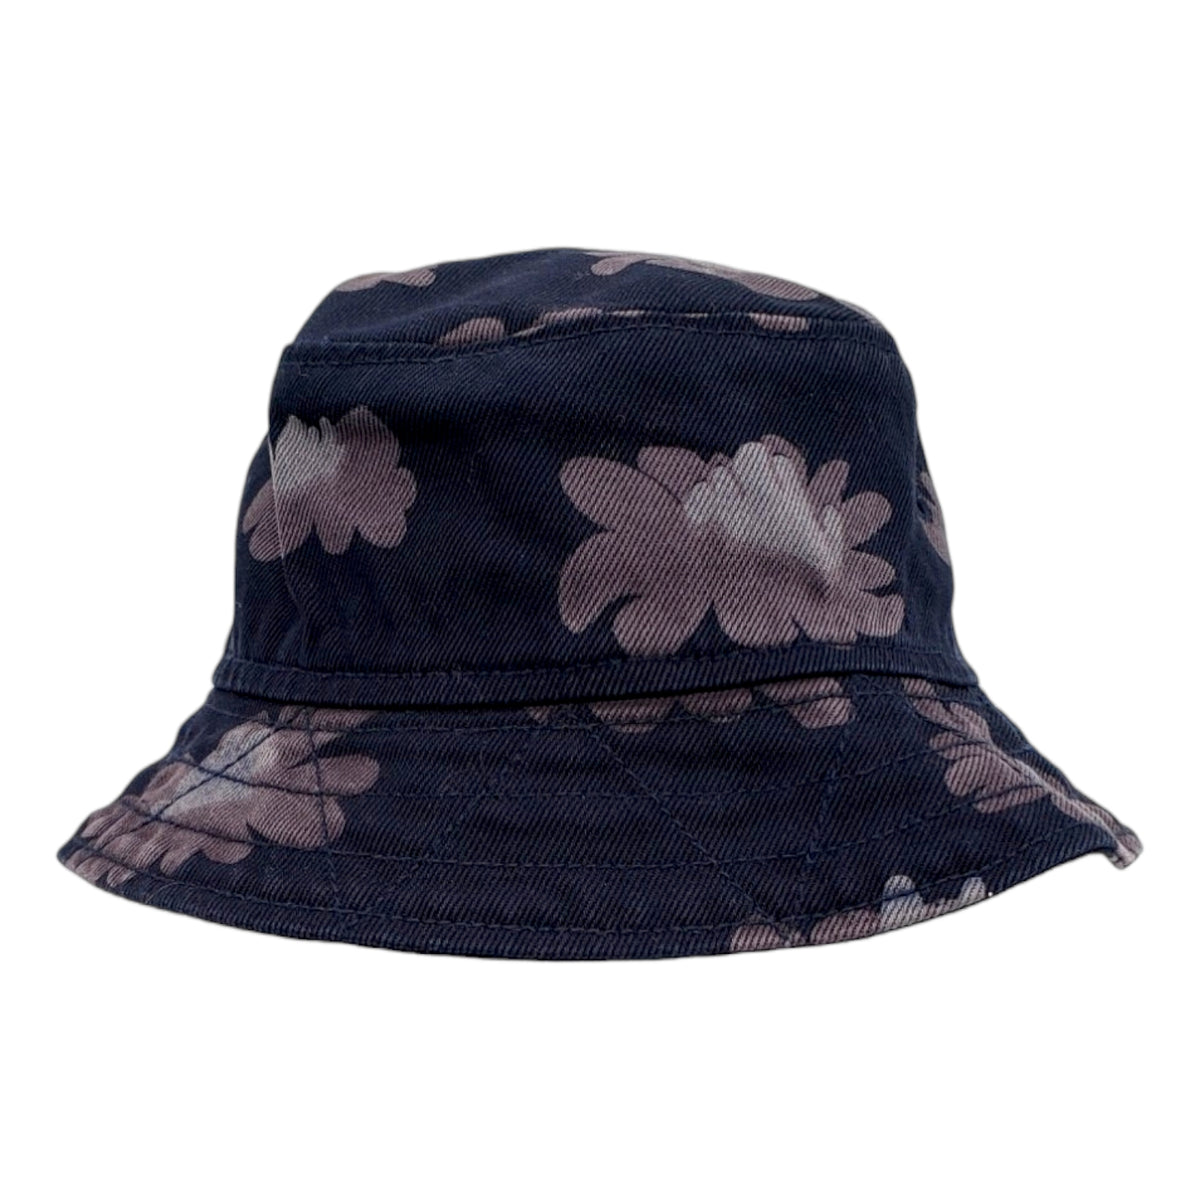 Garbstore Dark Grey Floral Bucket Hat